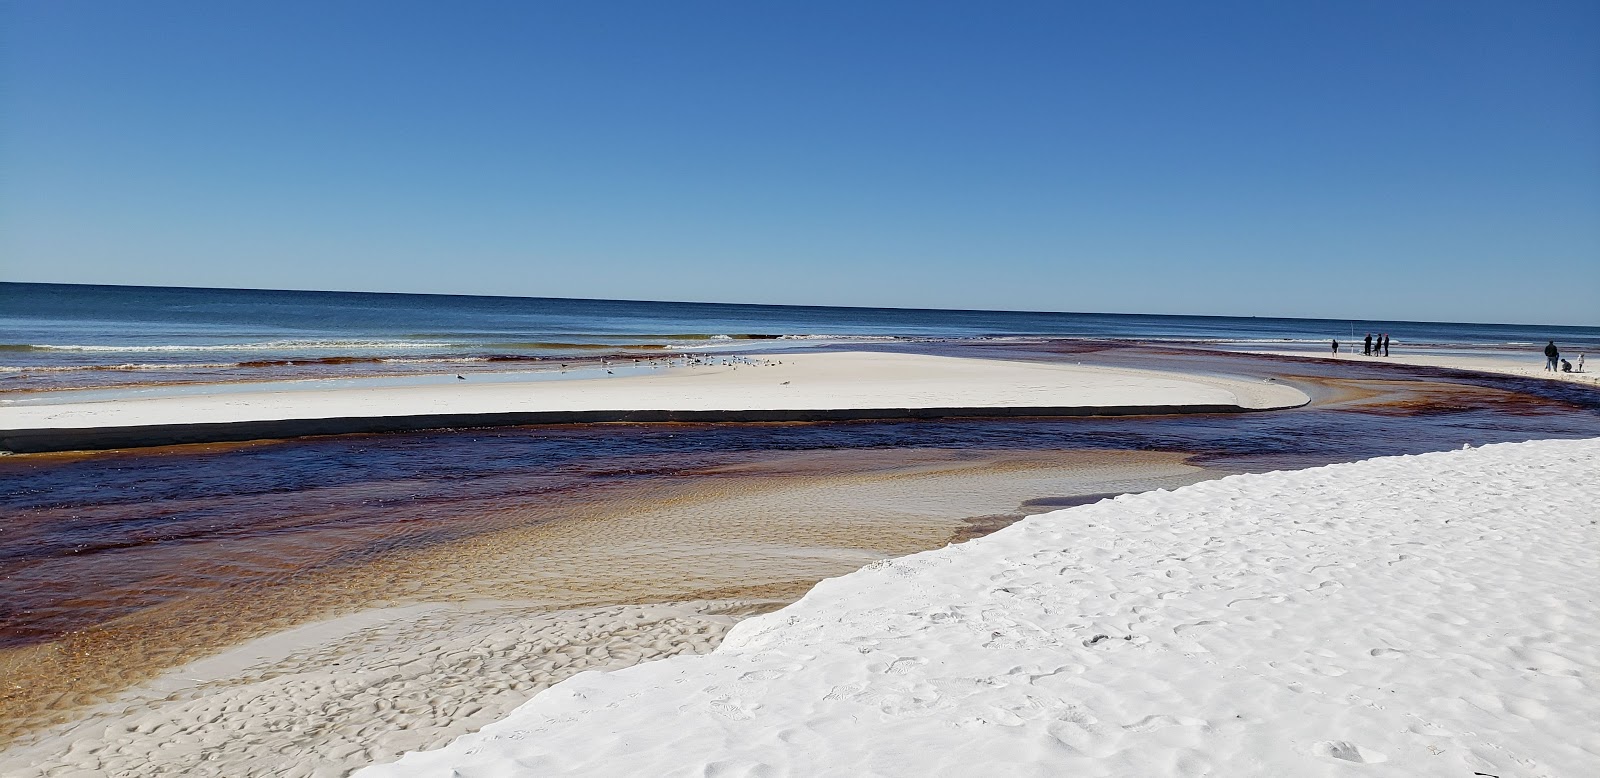 Grayton Beach West'in fotoğrafı beyaz ince kum yüzey ile